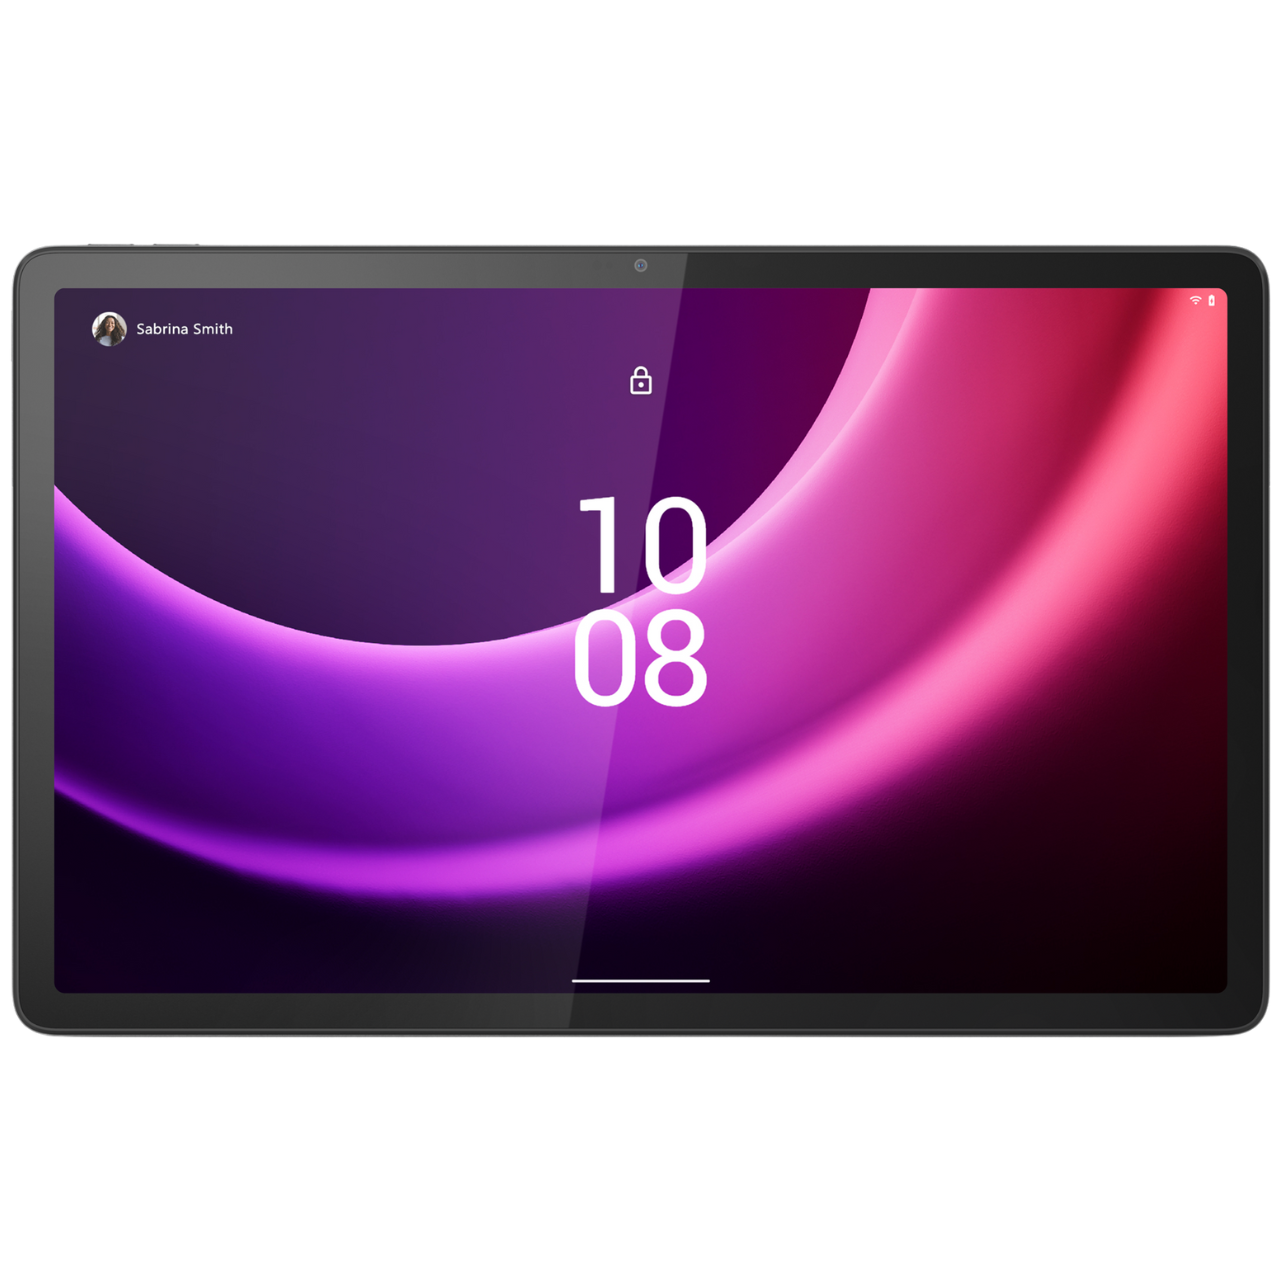 Le Lenovo Xiaoxin Pad 2024 présenté en avant-première comme la prochaine  tablette polyvalente et économique Android -  News